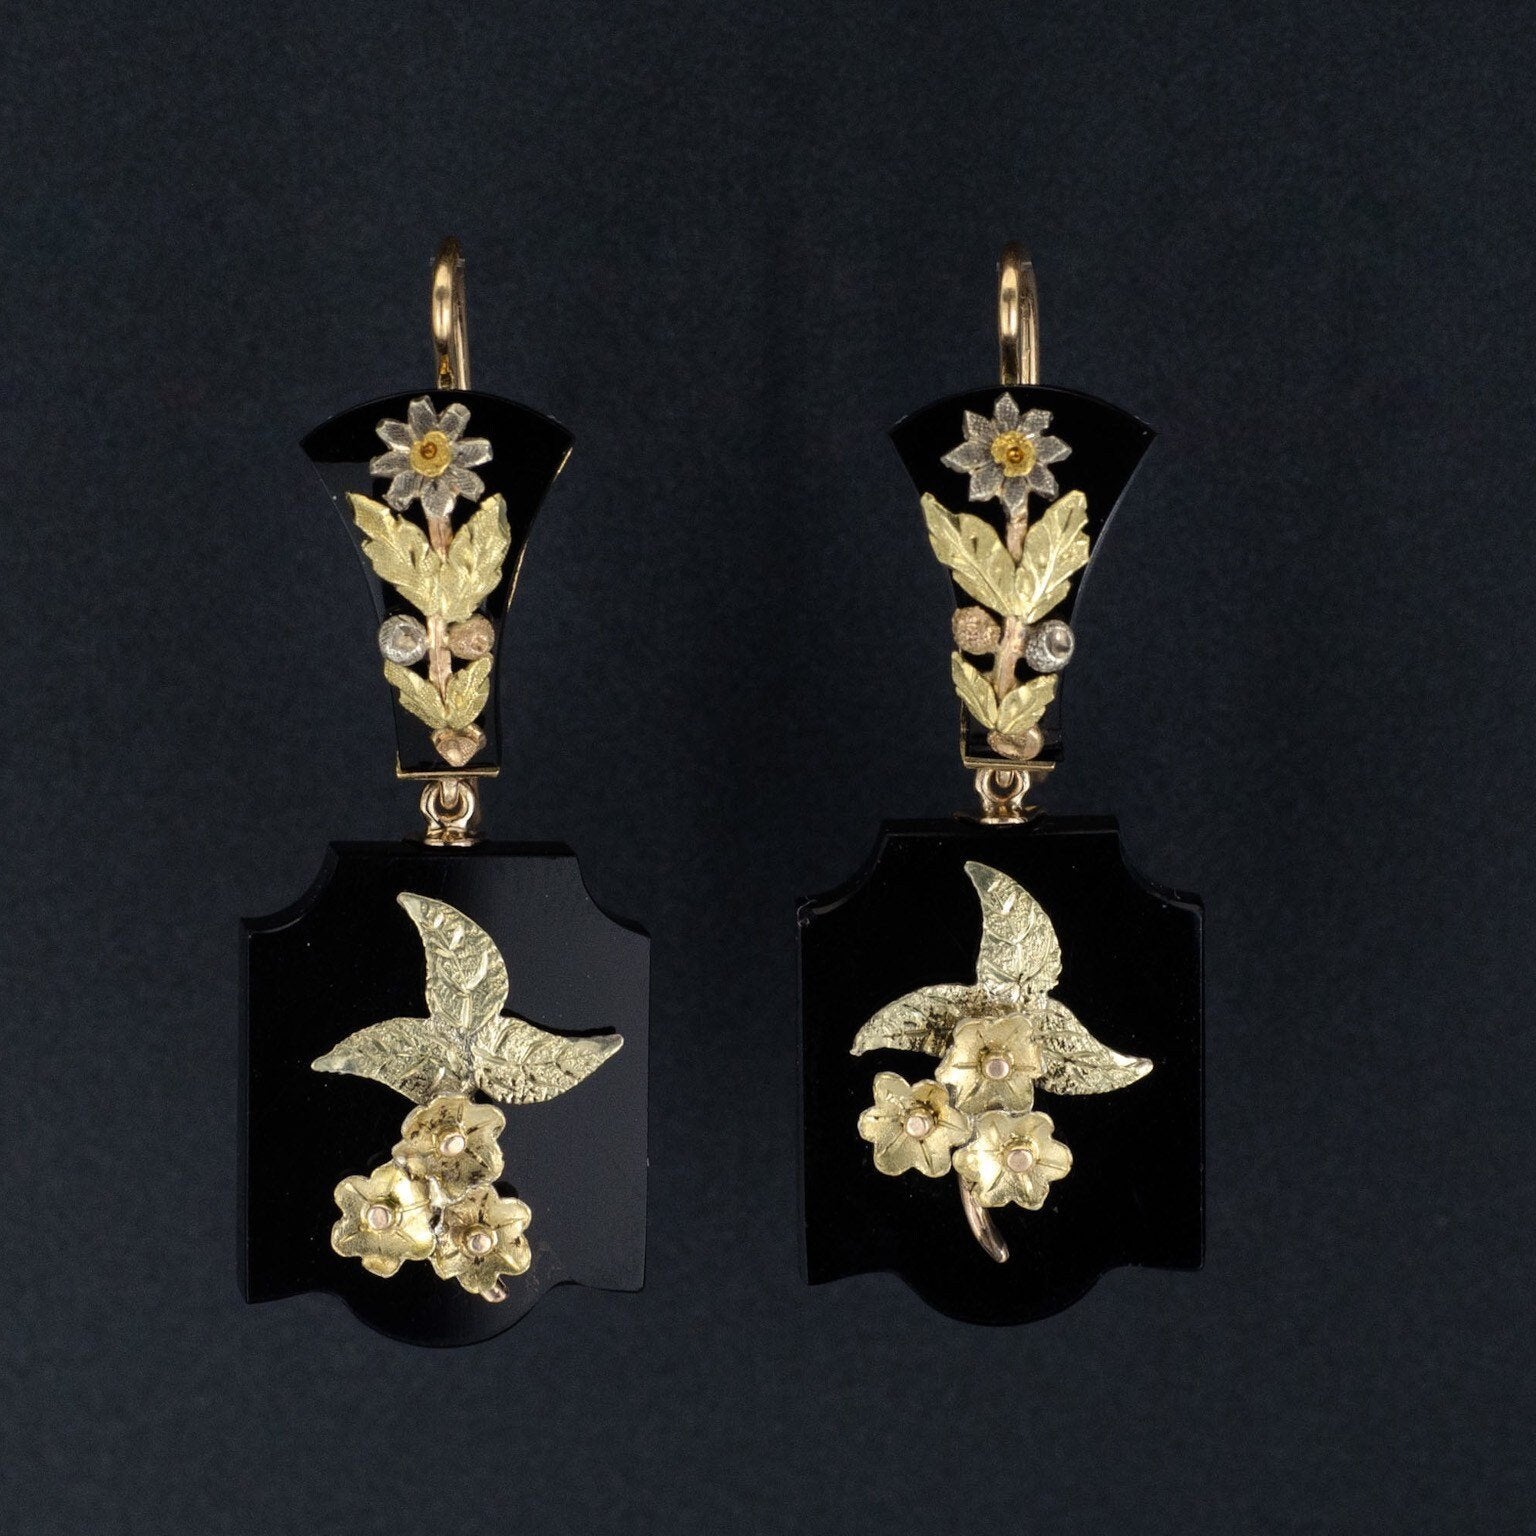 Antique Onyx Earrings | Antique Gold Flower Earrings 